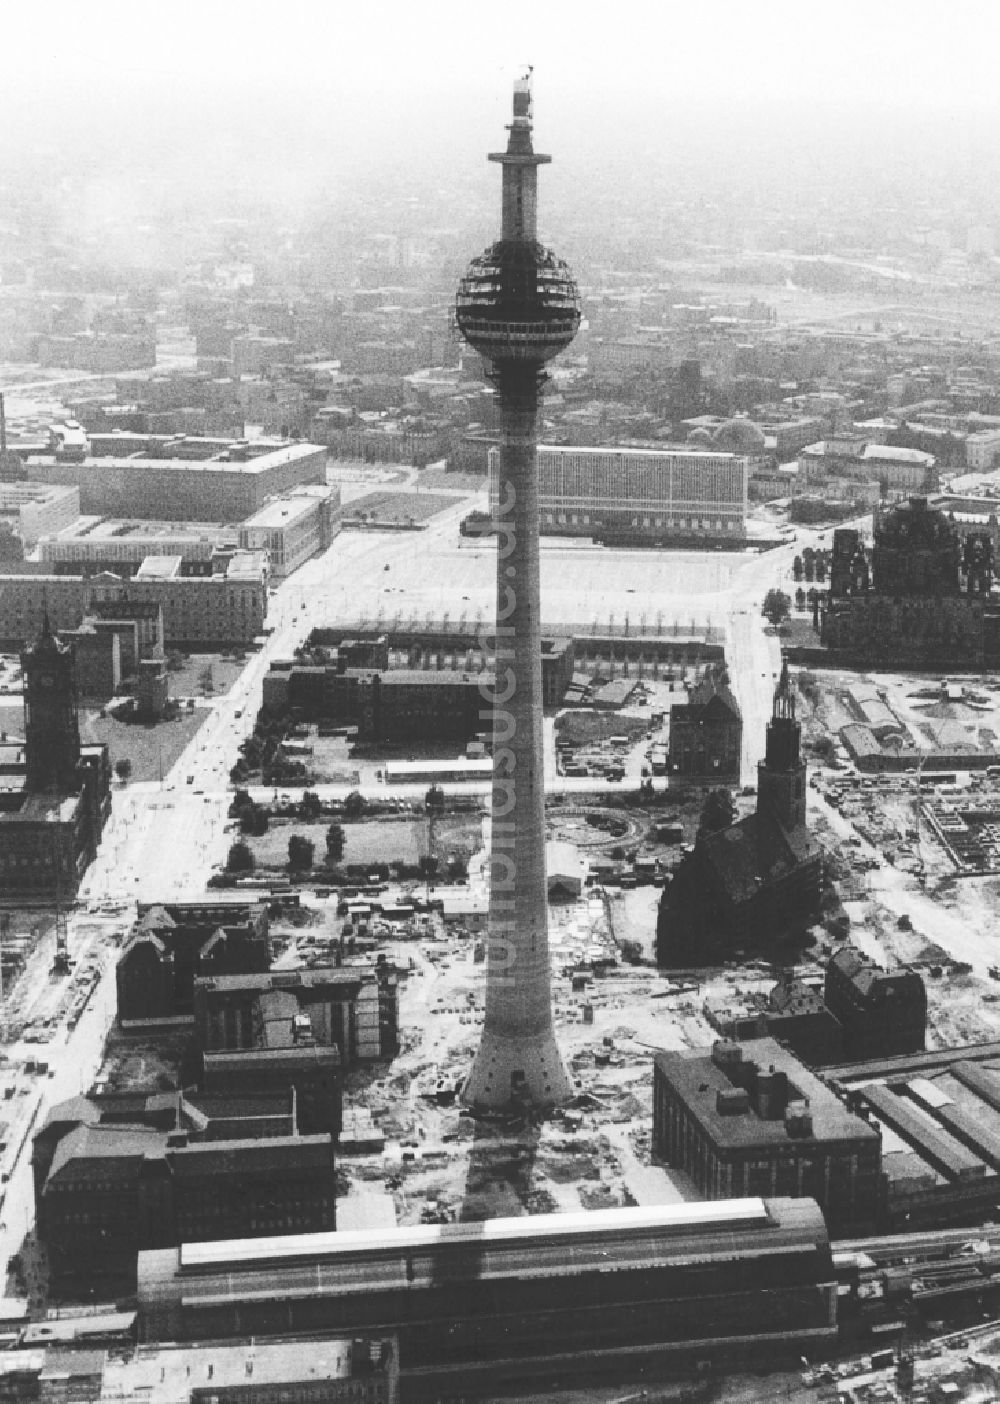 Luftaufnahme Berlin - Rohbau des Berliner Fernsehturm am Alexanderplatz in Berlin-Mitte